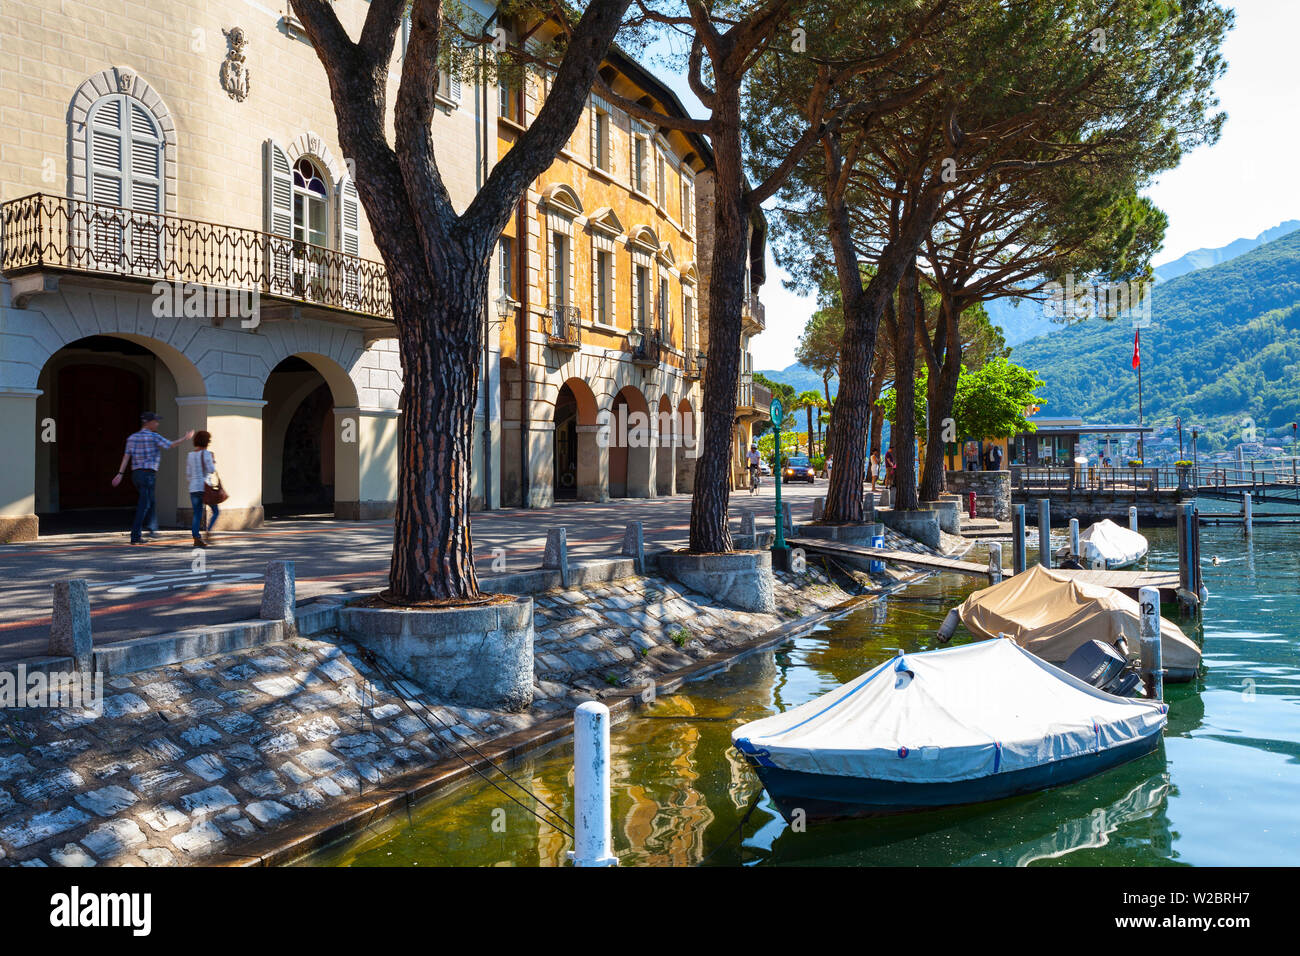 Das idyllische Dorf am Seeufer von Vico Morcote Lago di Lugano, Tessin, Schweiz Stockfoto